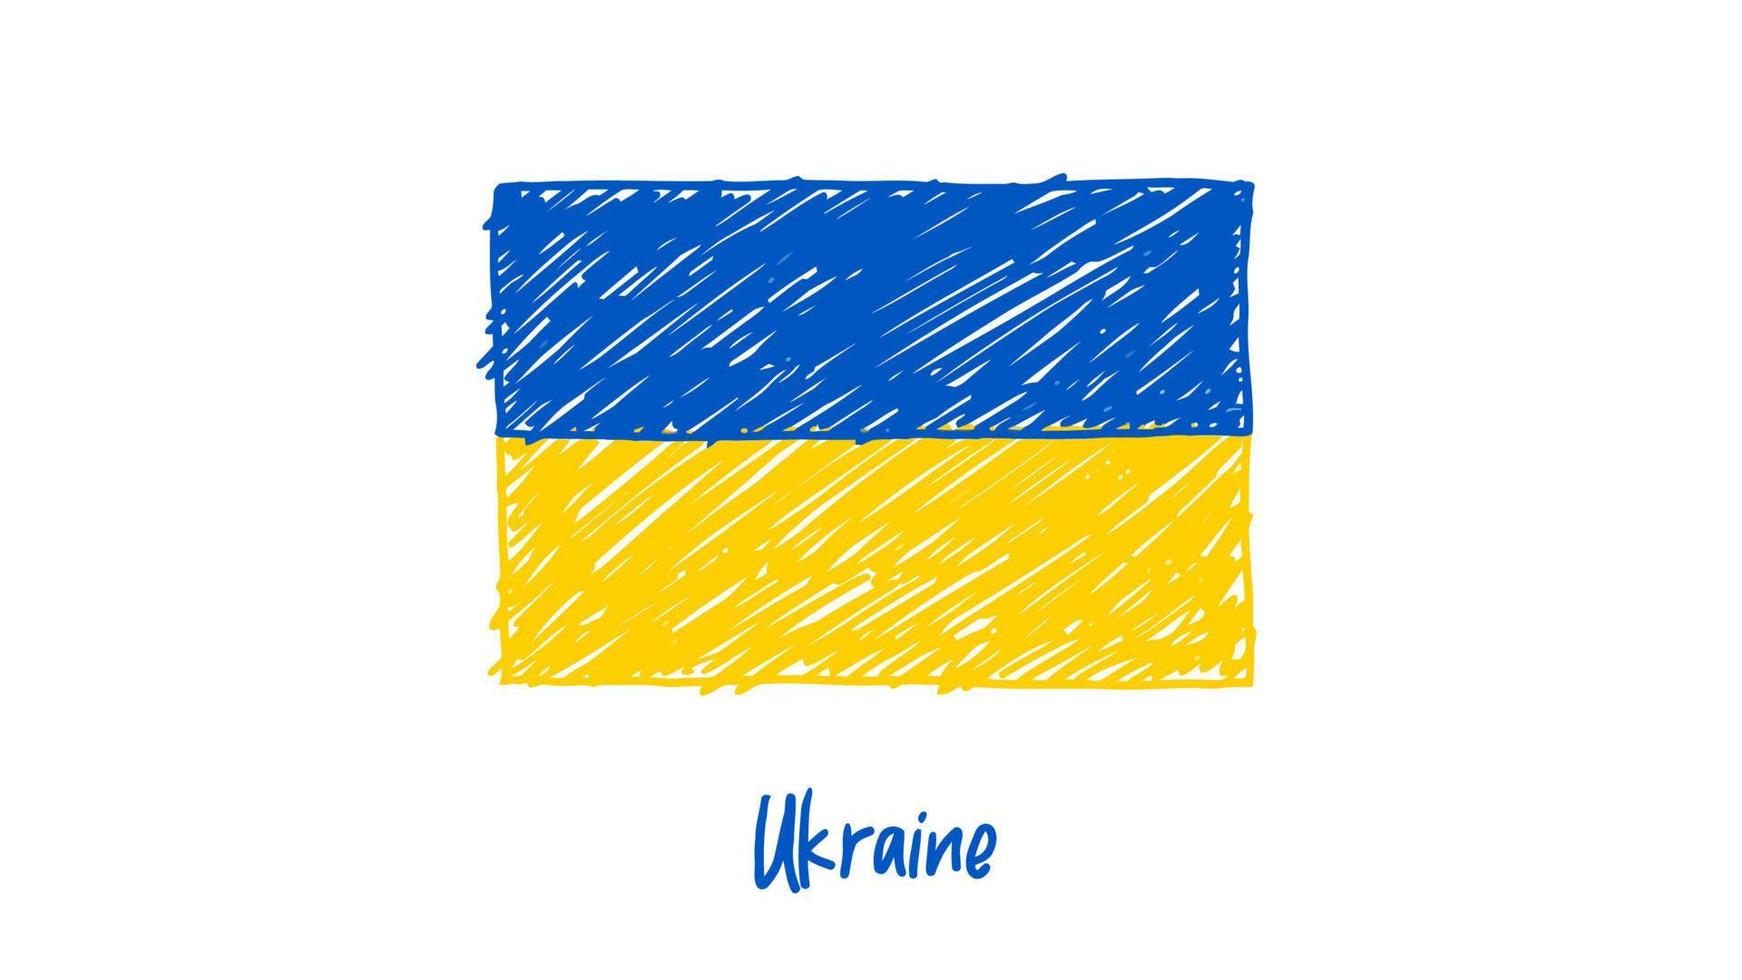 marcador de bandeira nacional da ucrânia ou vetor de ilustração de esboço a lápis